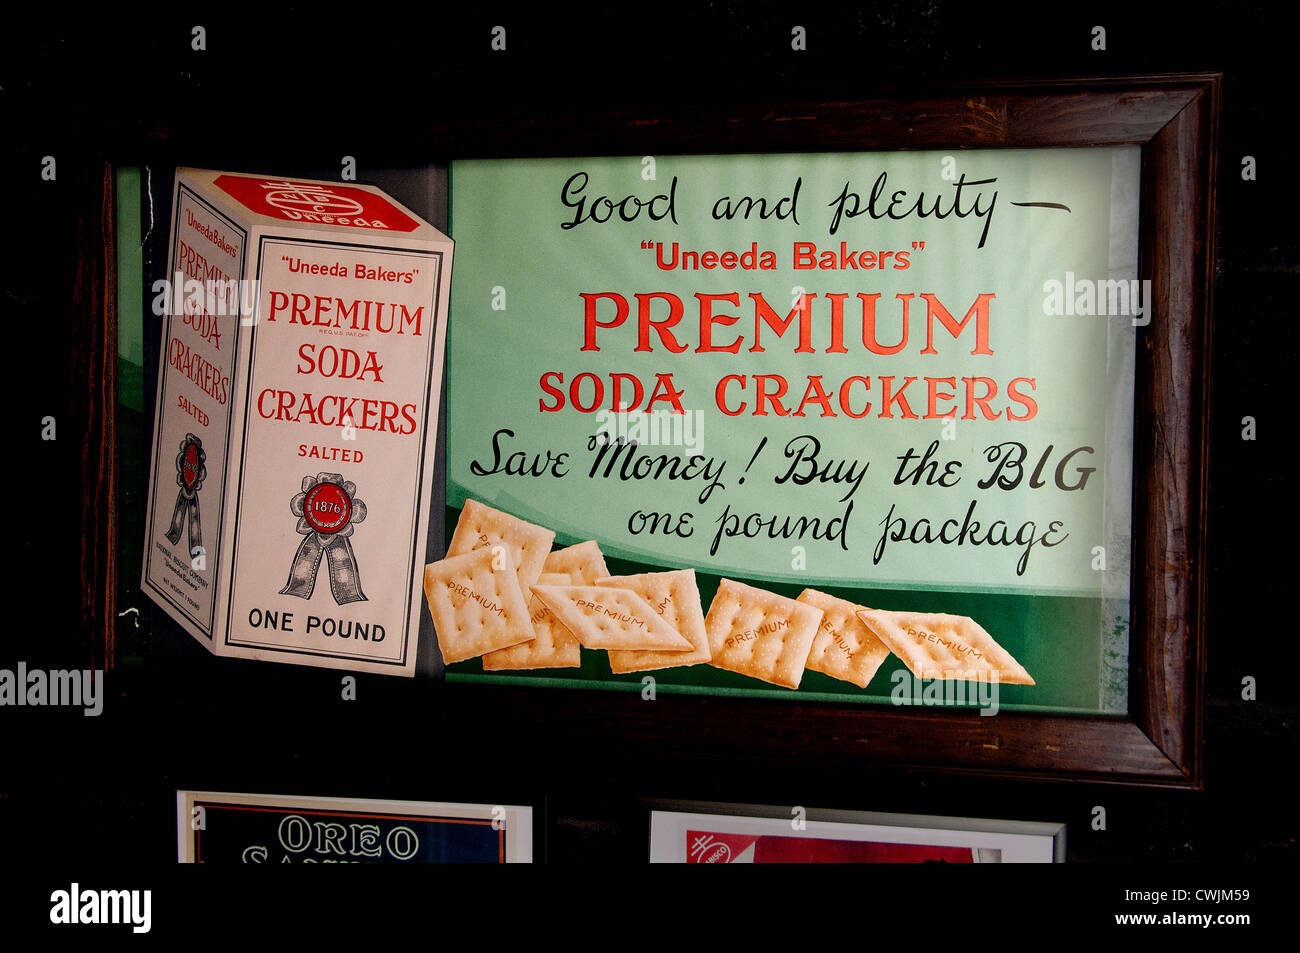 Papillotes à soda Premium Uneeda Bakers Bakery Manhattan, New York City , américain, États-Unis d'Amérique, États-Unis Banque D'Images